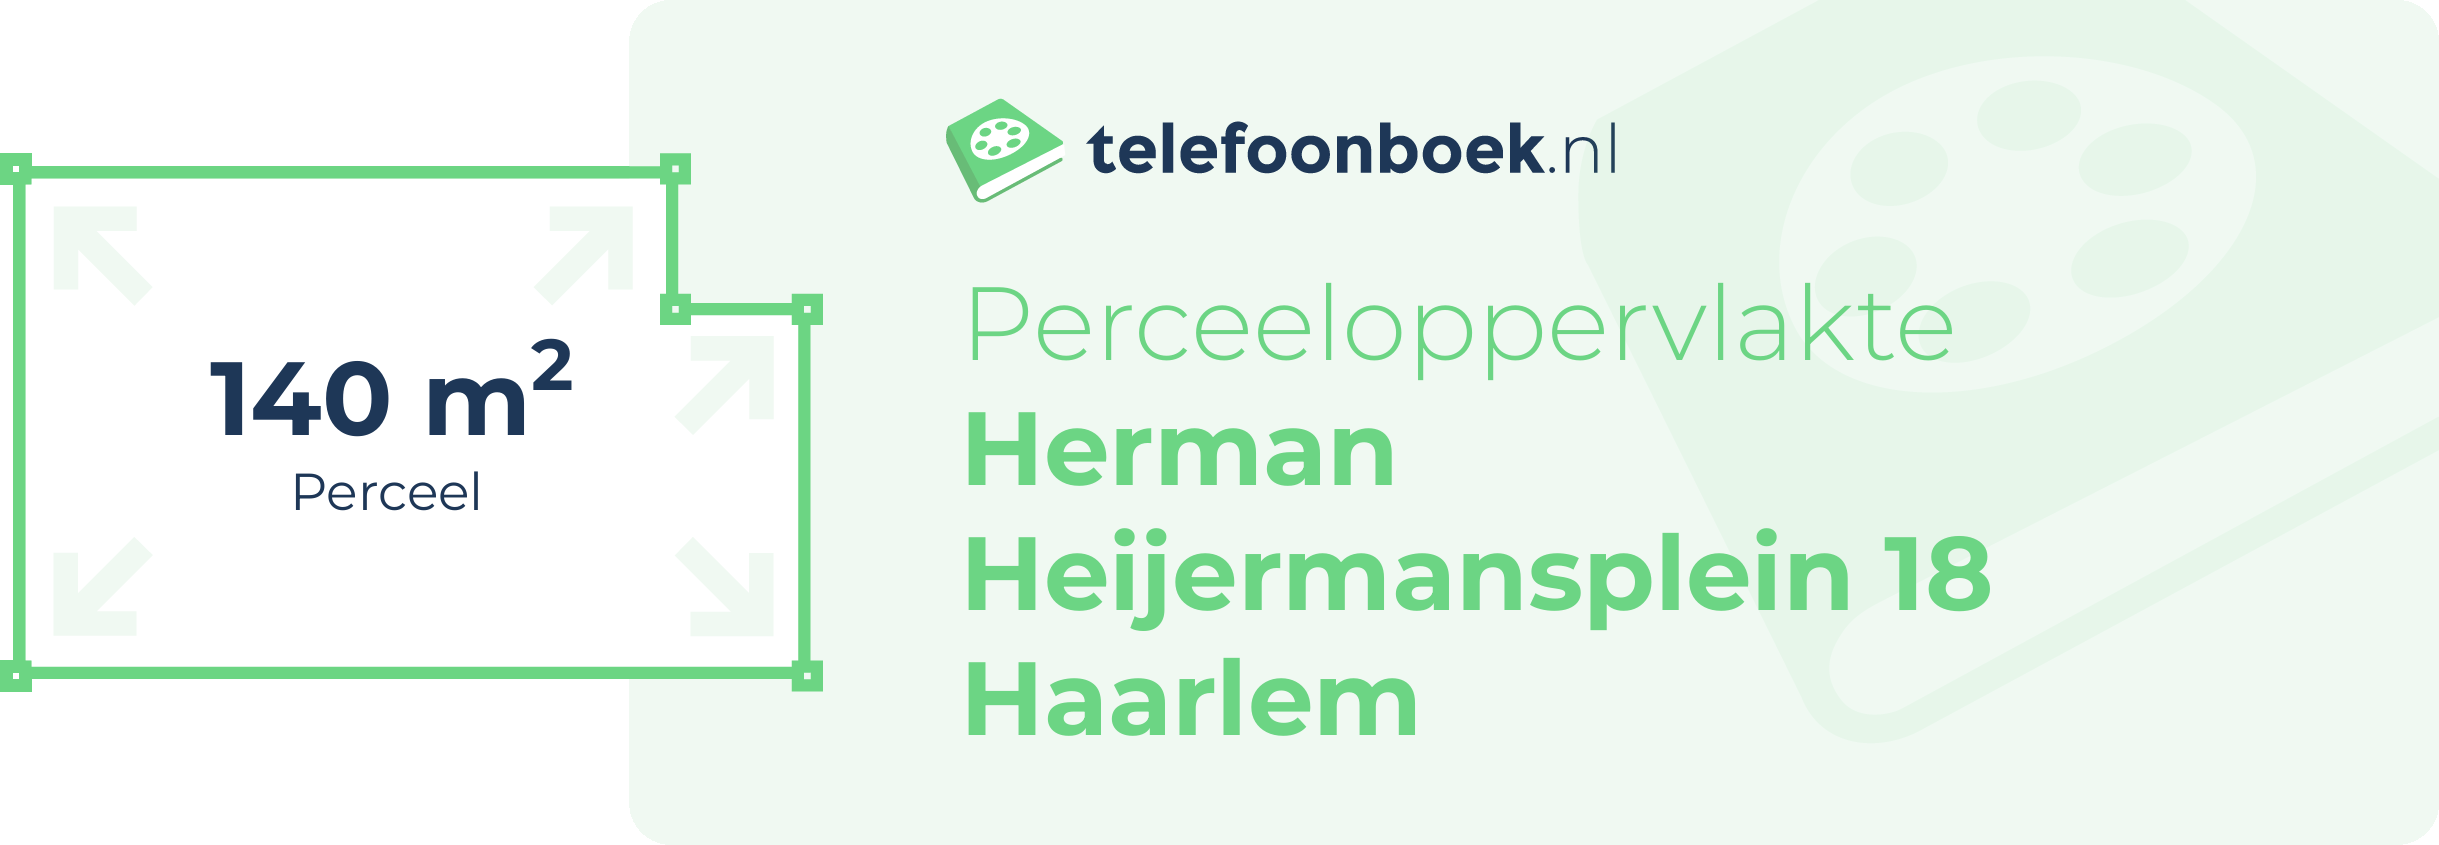 Perceeloppervlakte Herman Heijermansplein 18 Haarlem